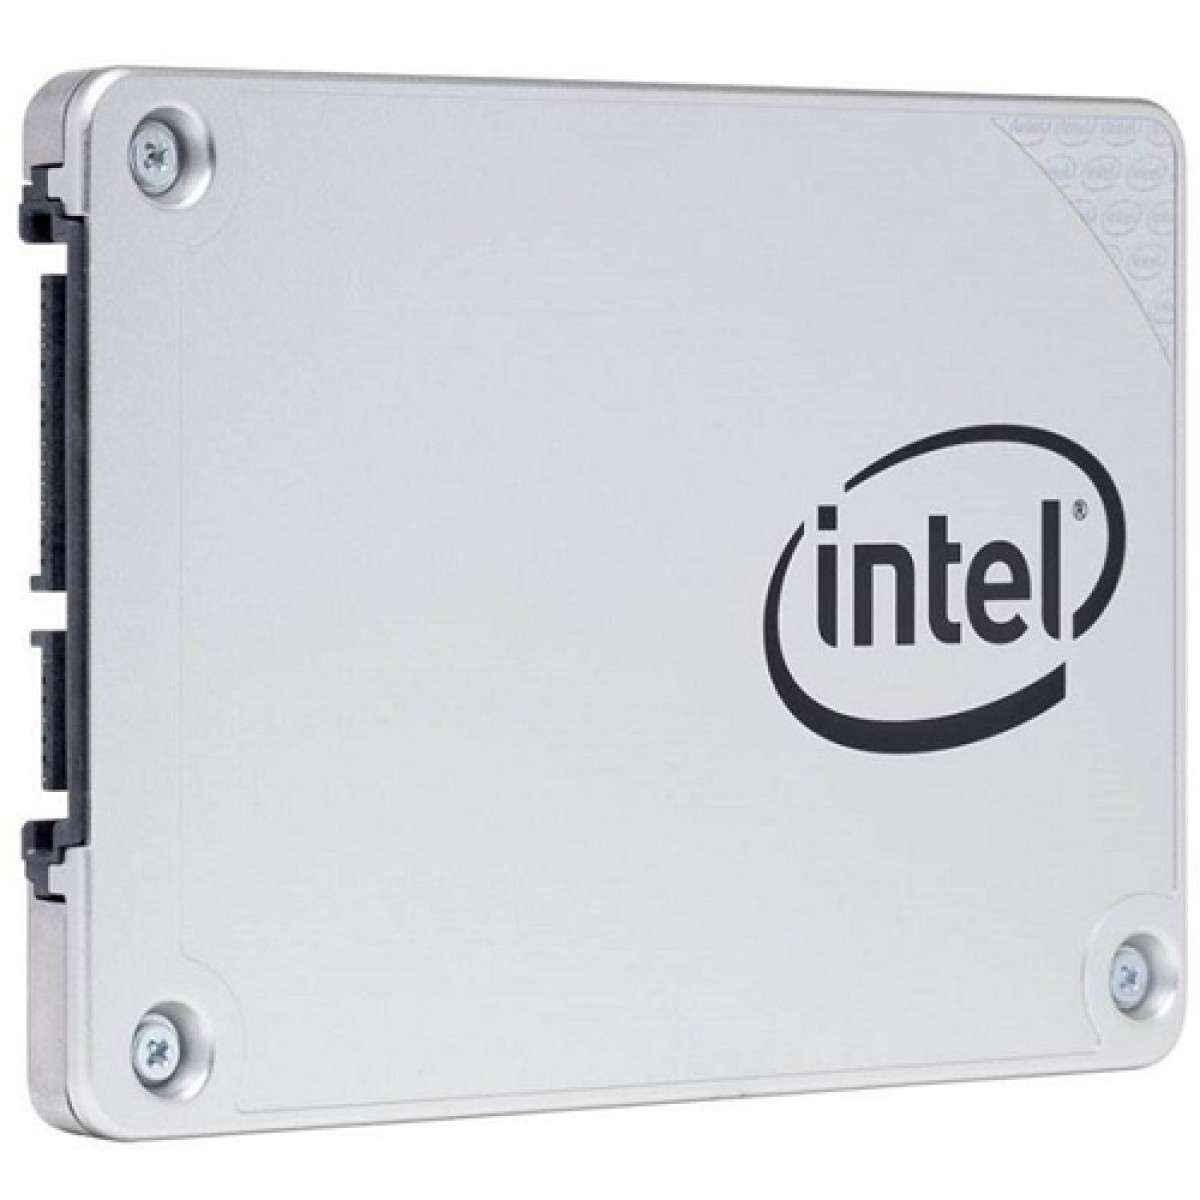 SSD Intel Series 545s 512GB SATA III Leitura 550MB/s e Gravação 500MB/s, SSDSC2KW512G8X1 